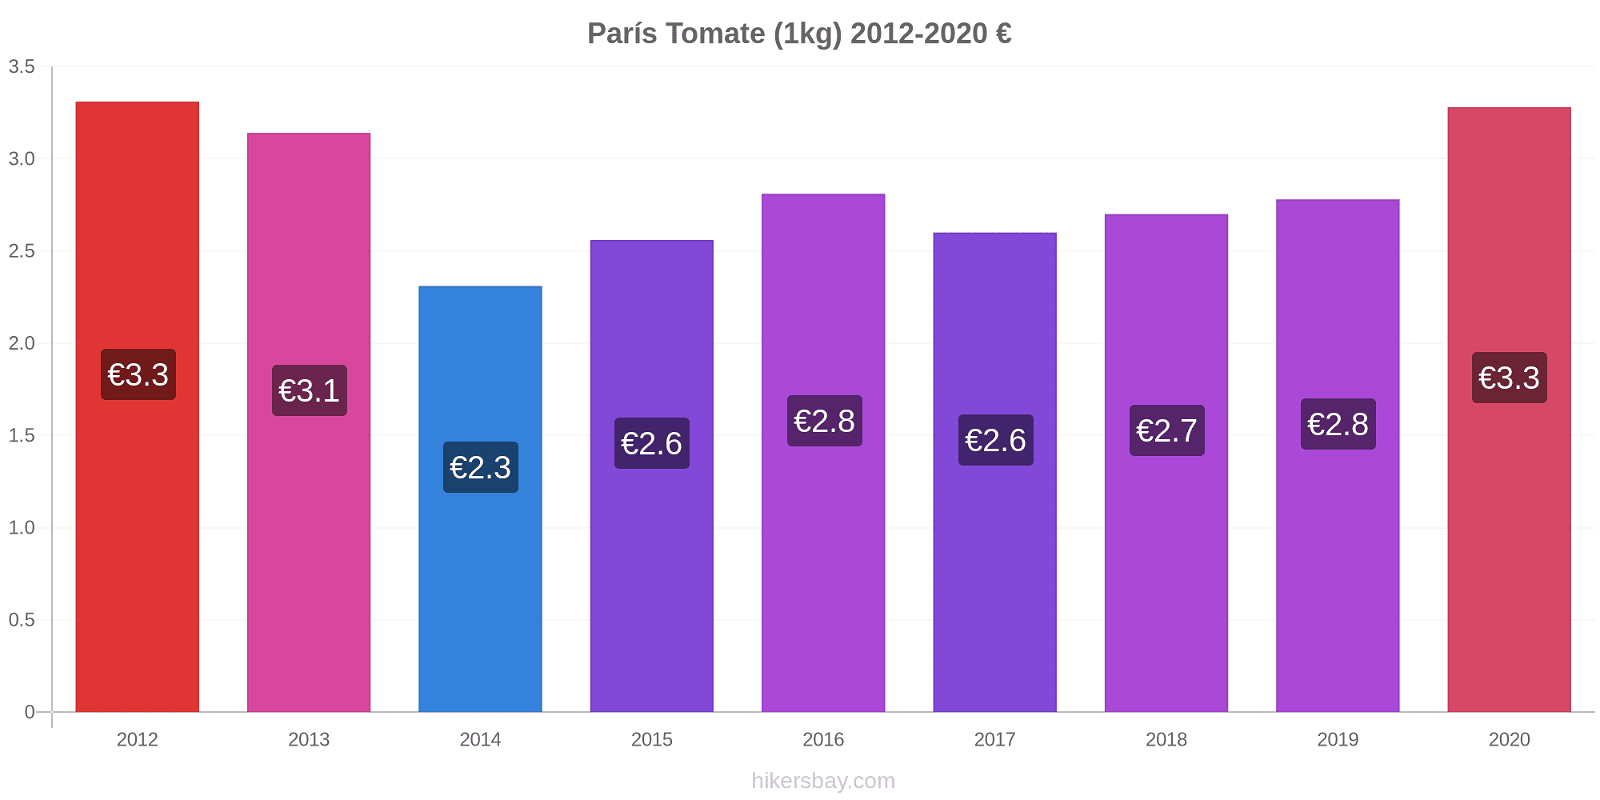 París cambios de precios Tomate (1kg) hikersbay.com